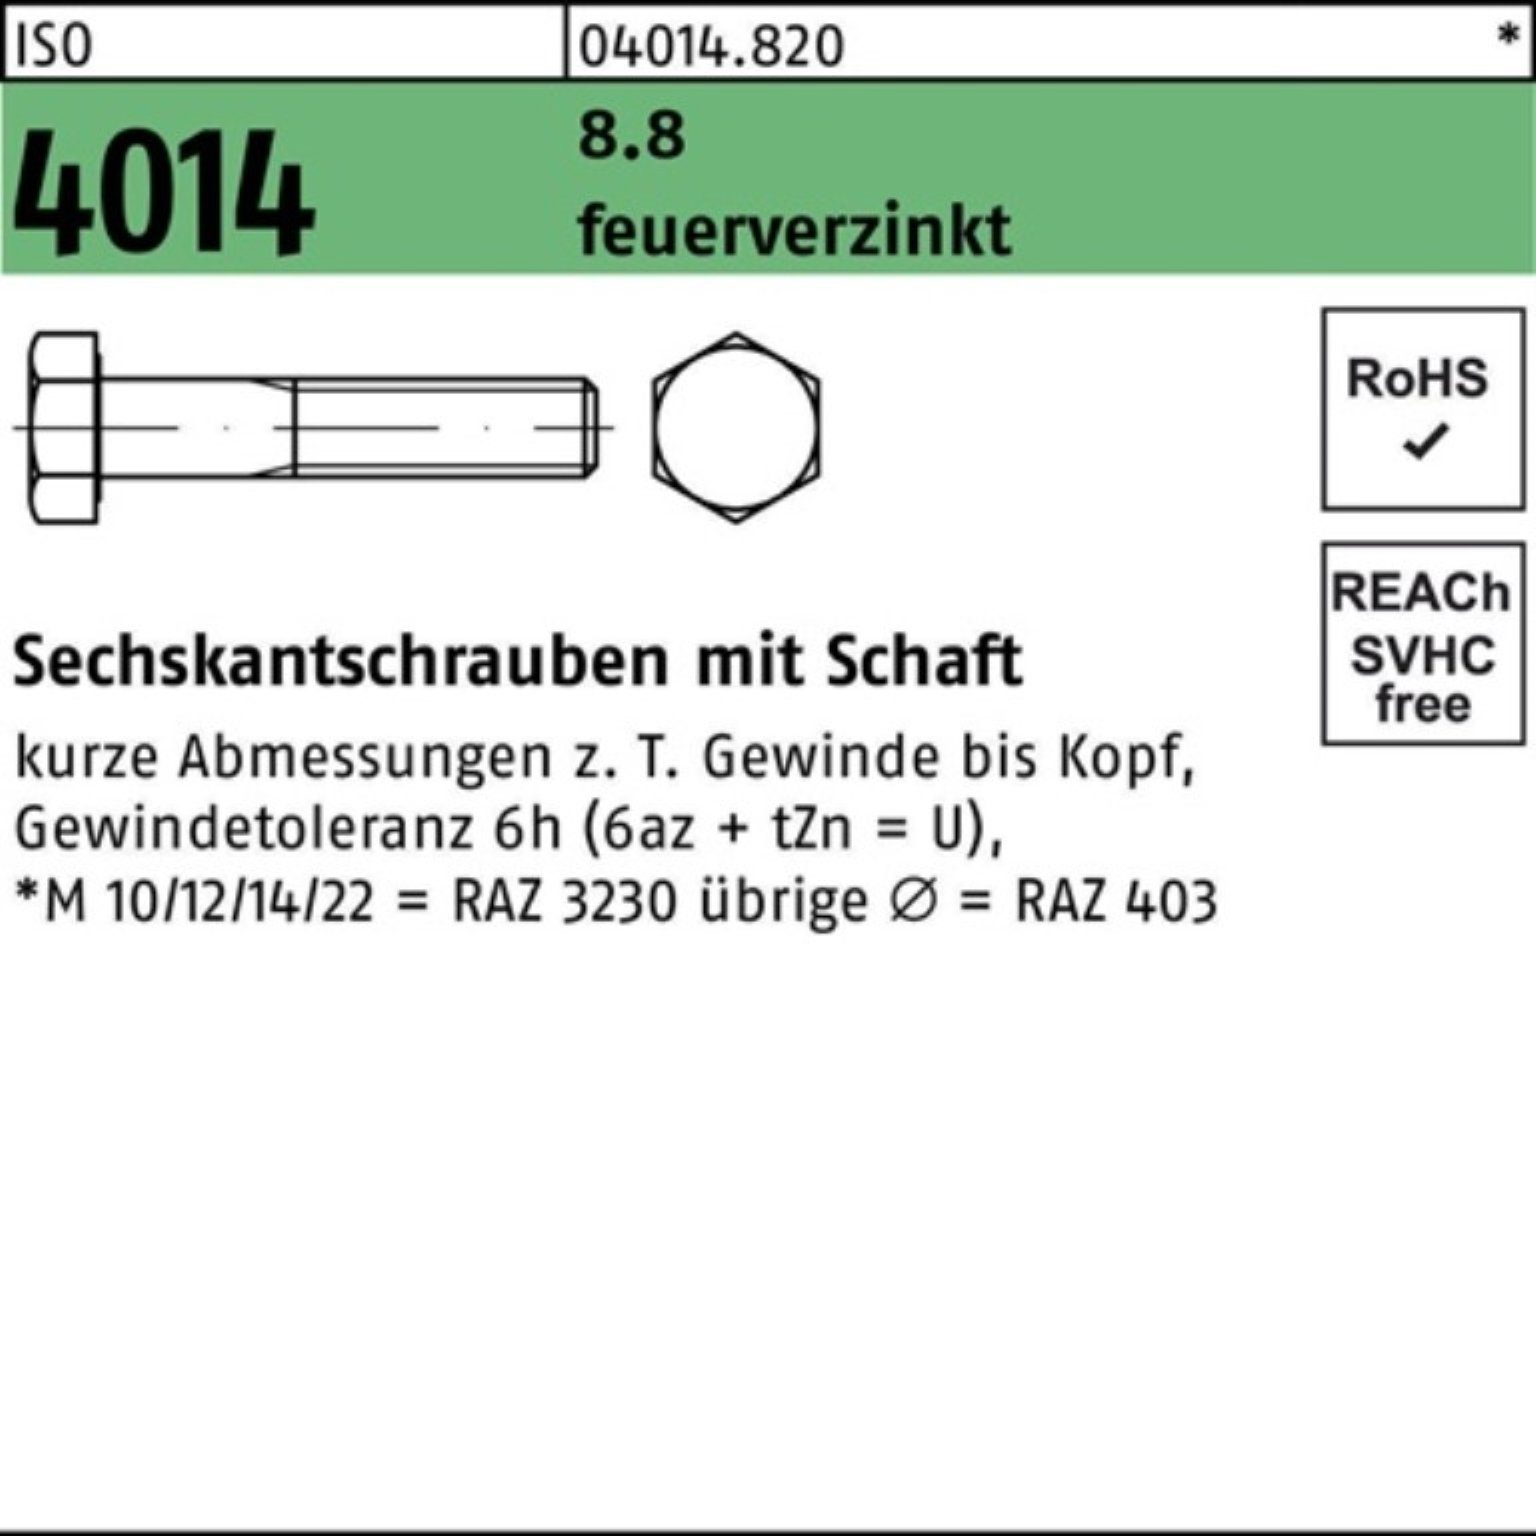 Bufab Sechskantschraube 100er Pack Sechskantschraube ISO 4014 Schaft M10x 100 8.8 feuerverz. 1